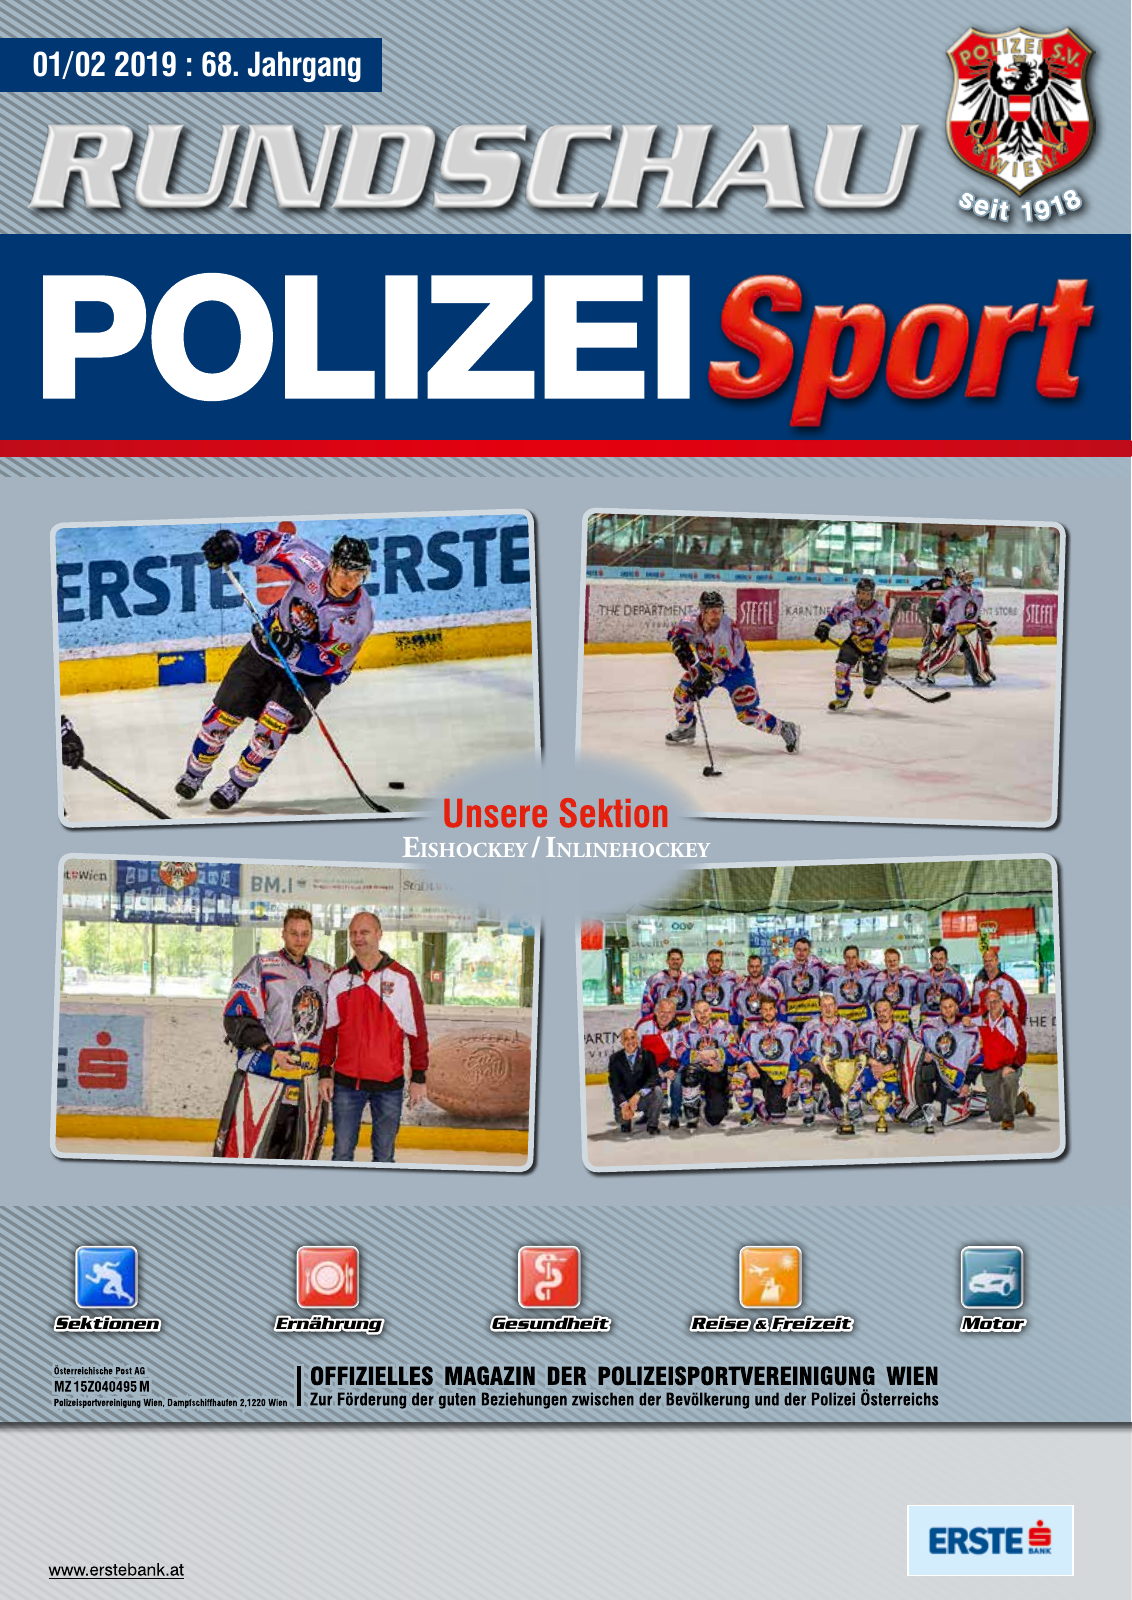 Vorschau Rundschau Polizei Sport 01-02/2019 Seite 1